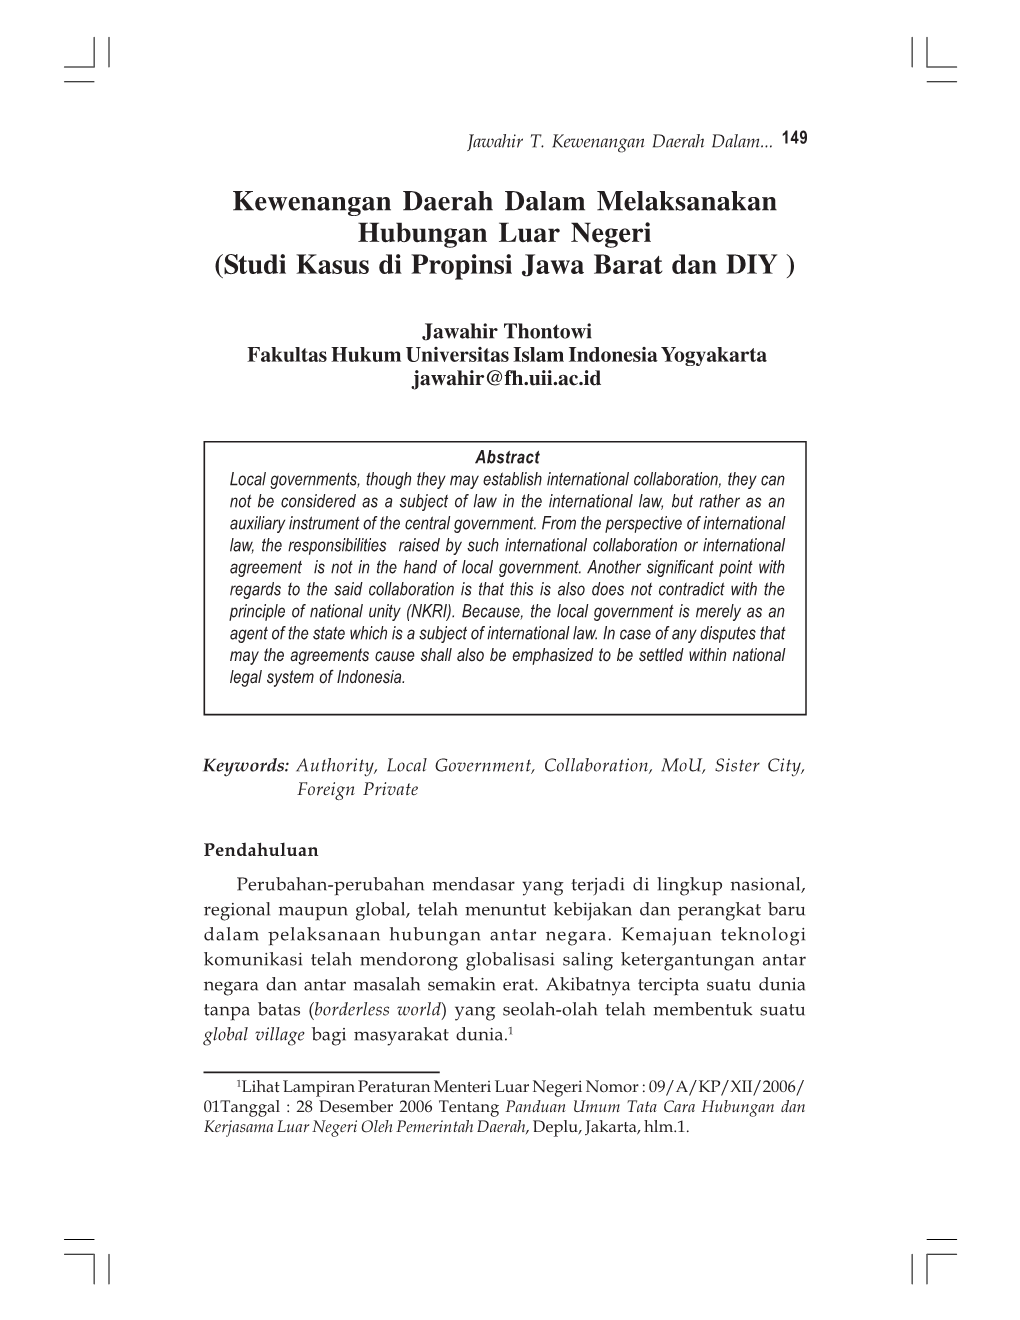 Kewenangan Daerah Dalam Melaksanakan Hubungan Luar Negeri (Studi Kasus Di Propinsi Jawa Barat Dan DIY )